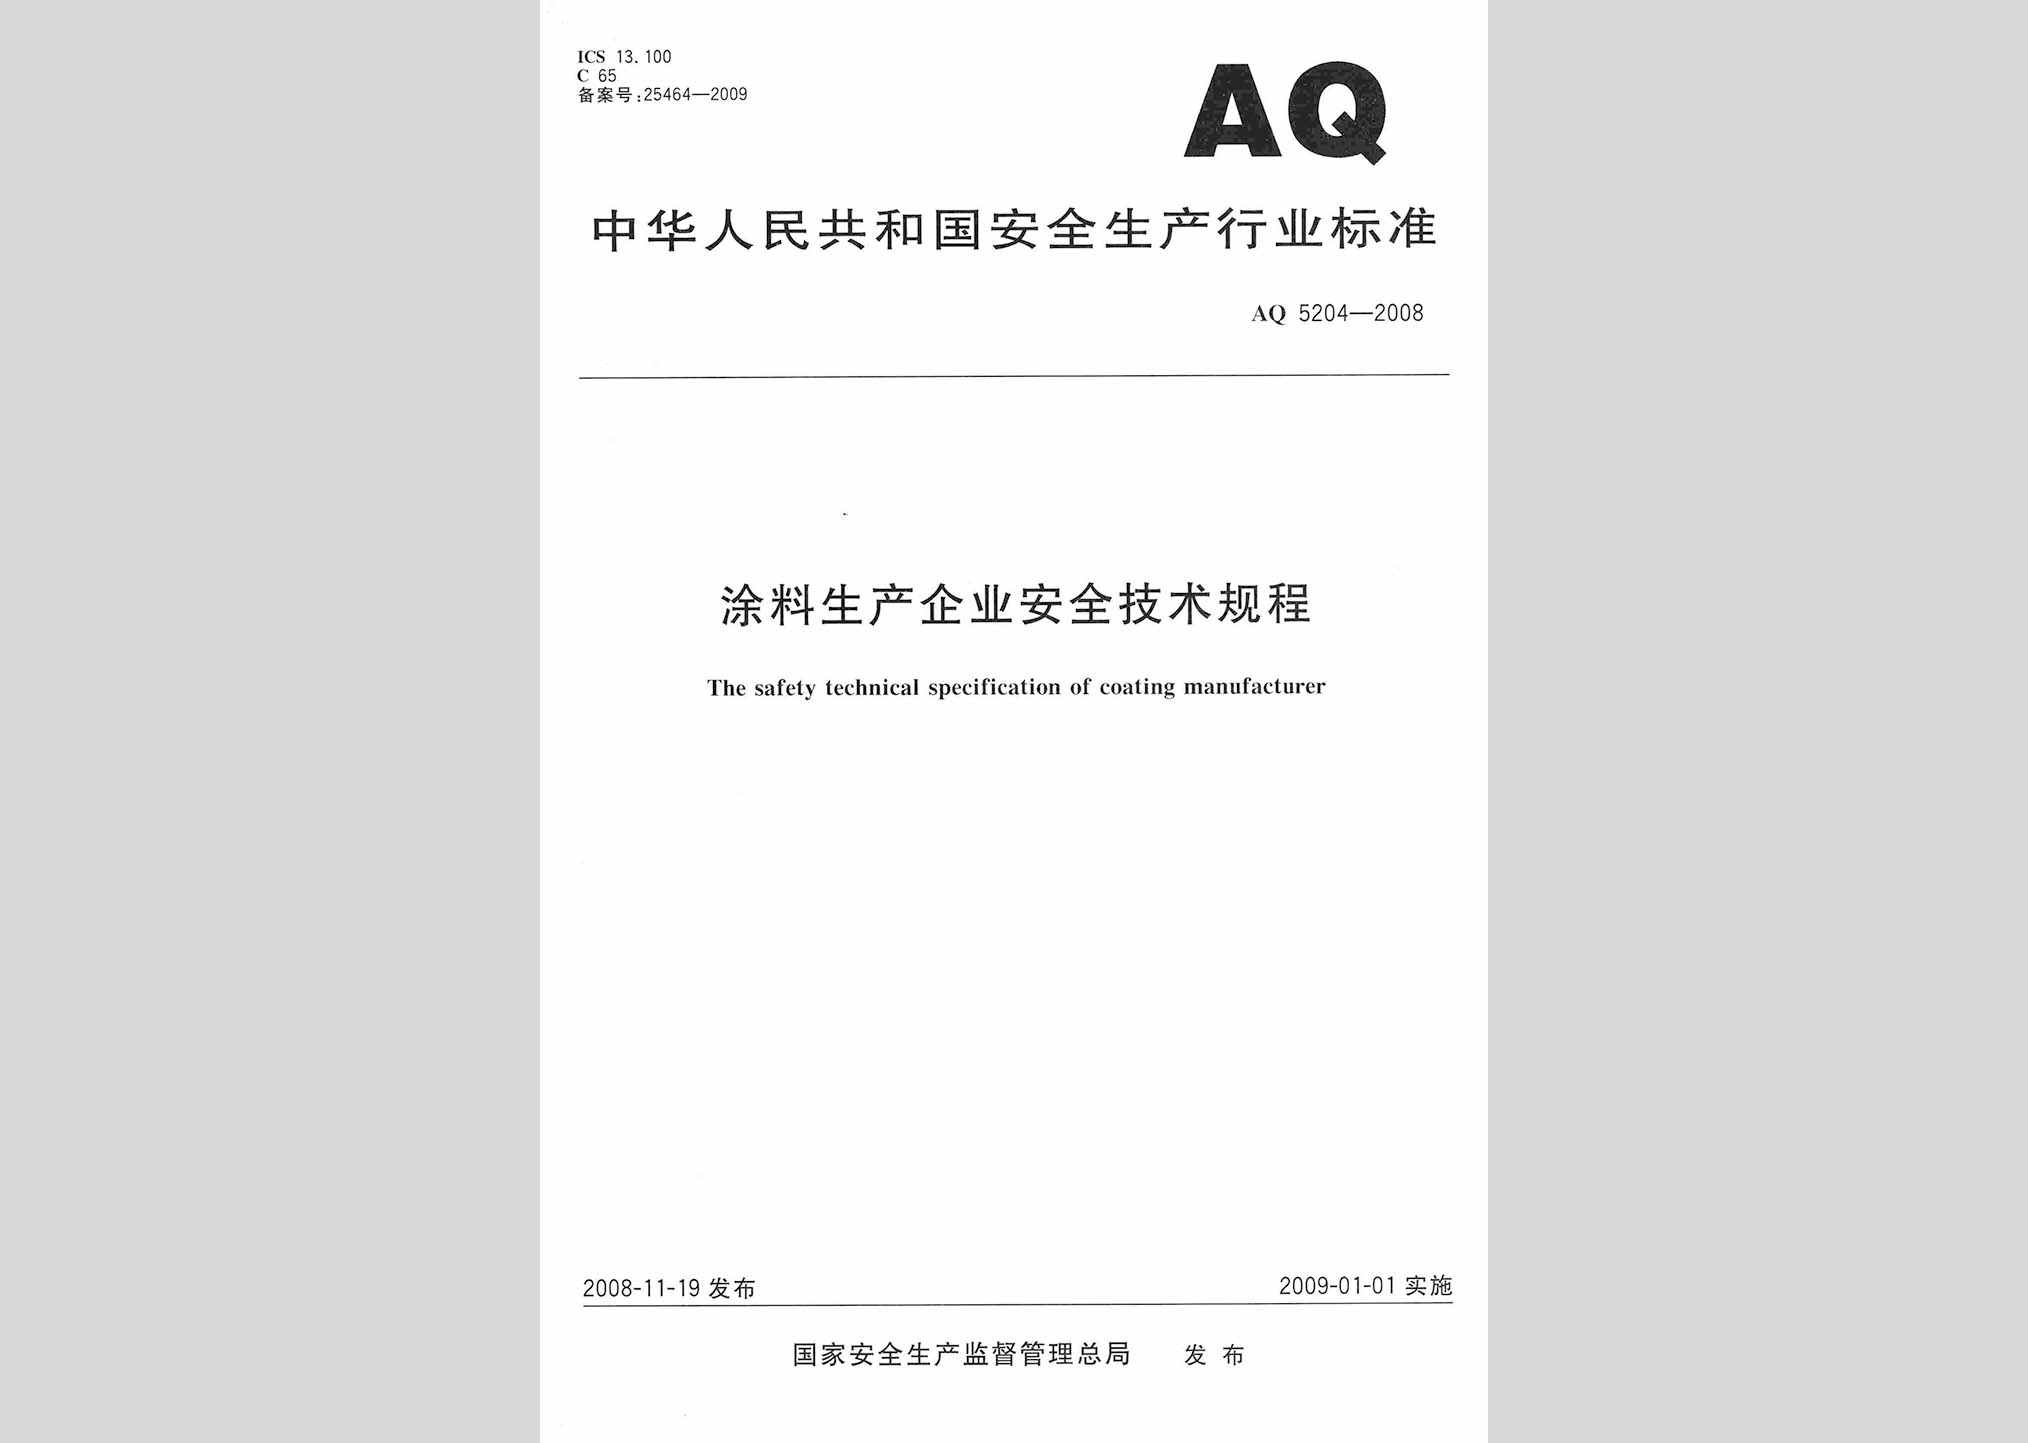 AQ5204-2008：涂料生产企业安全技术规程